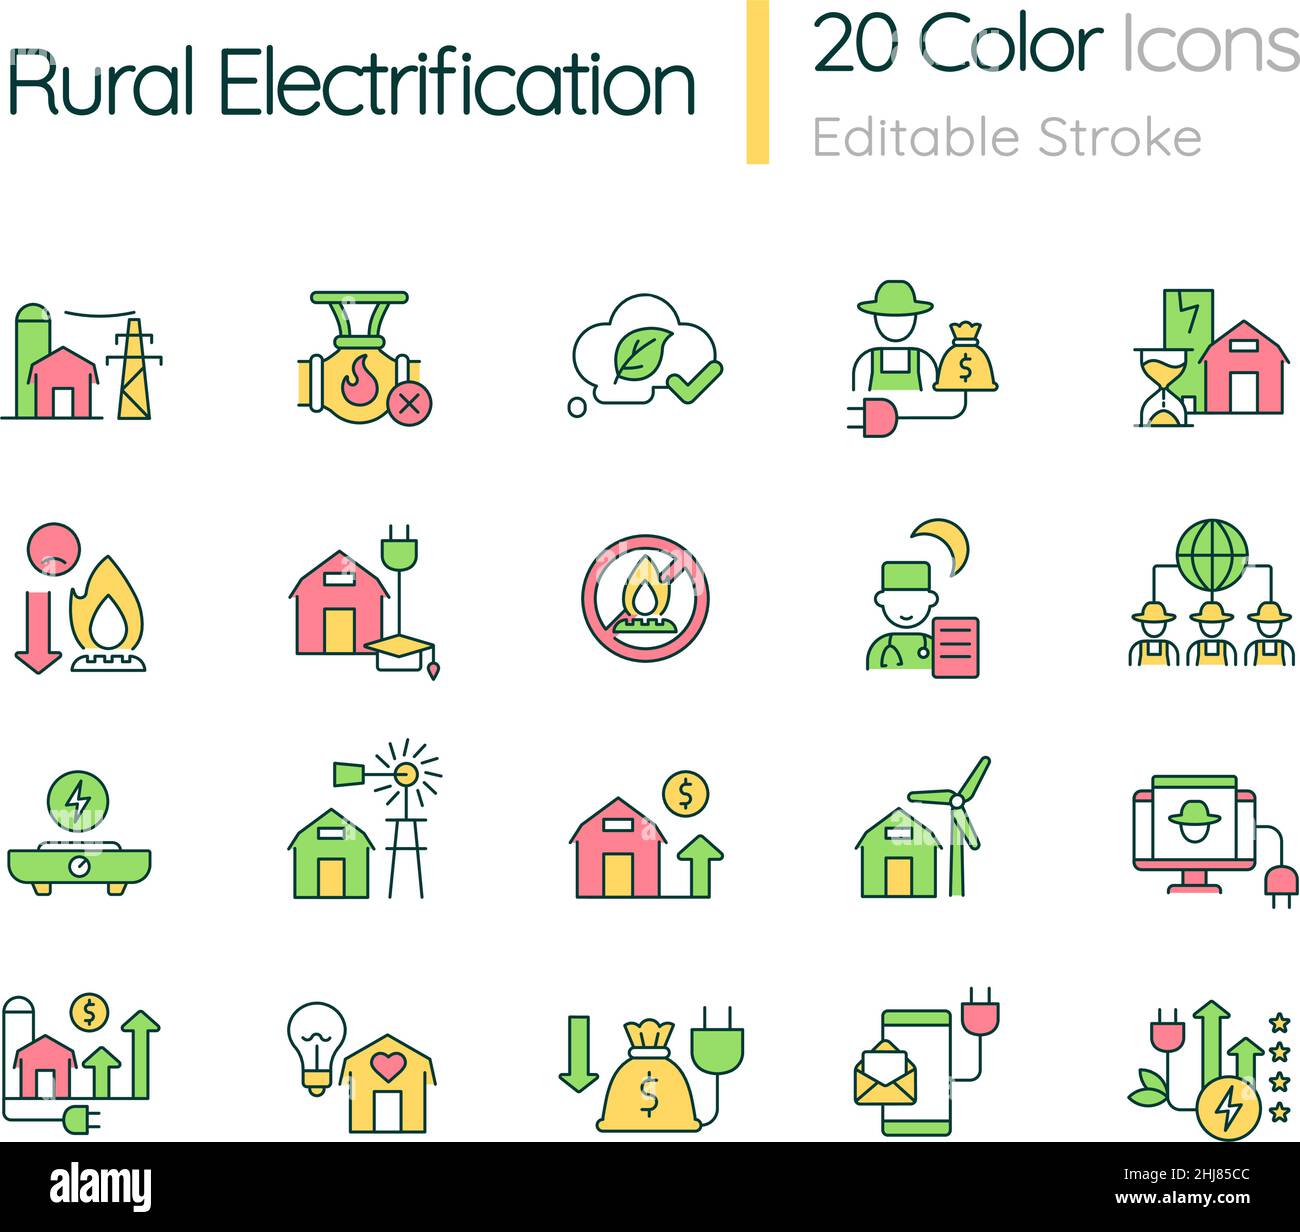 RGB-Farbsymbole für ländliche Elektrifizierung eingestellt Stock Vektor